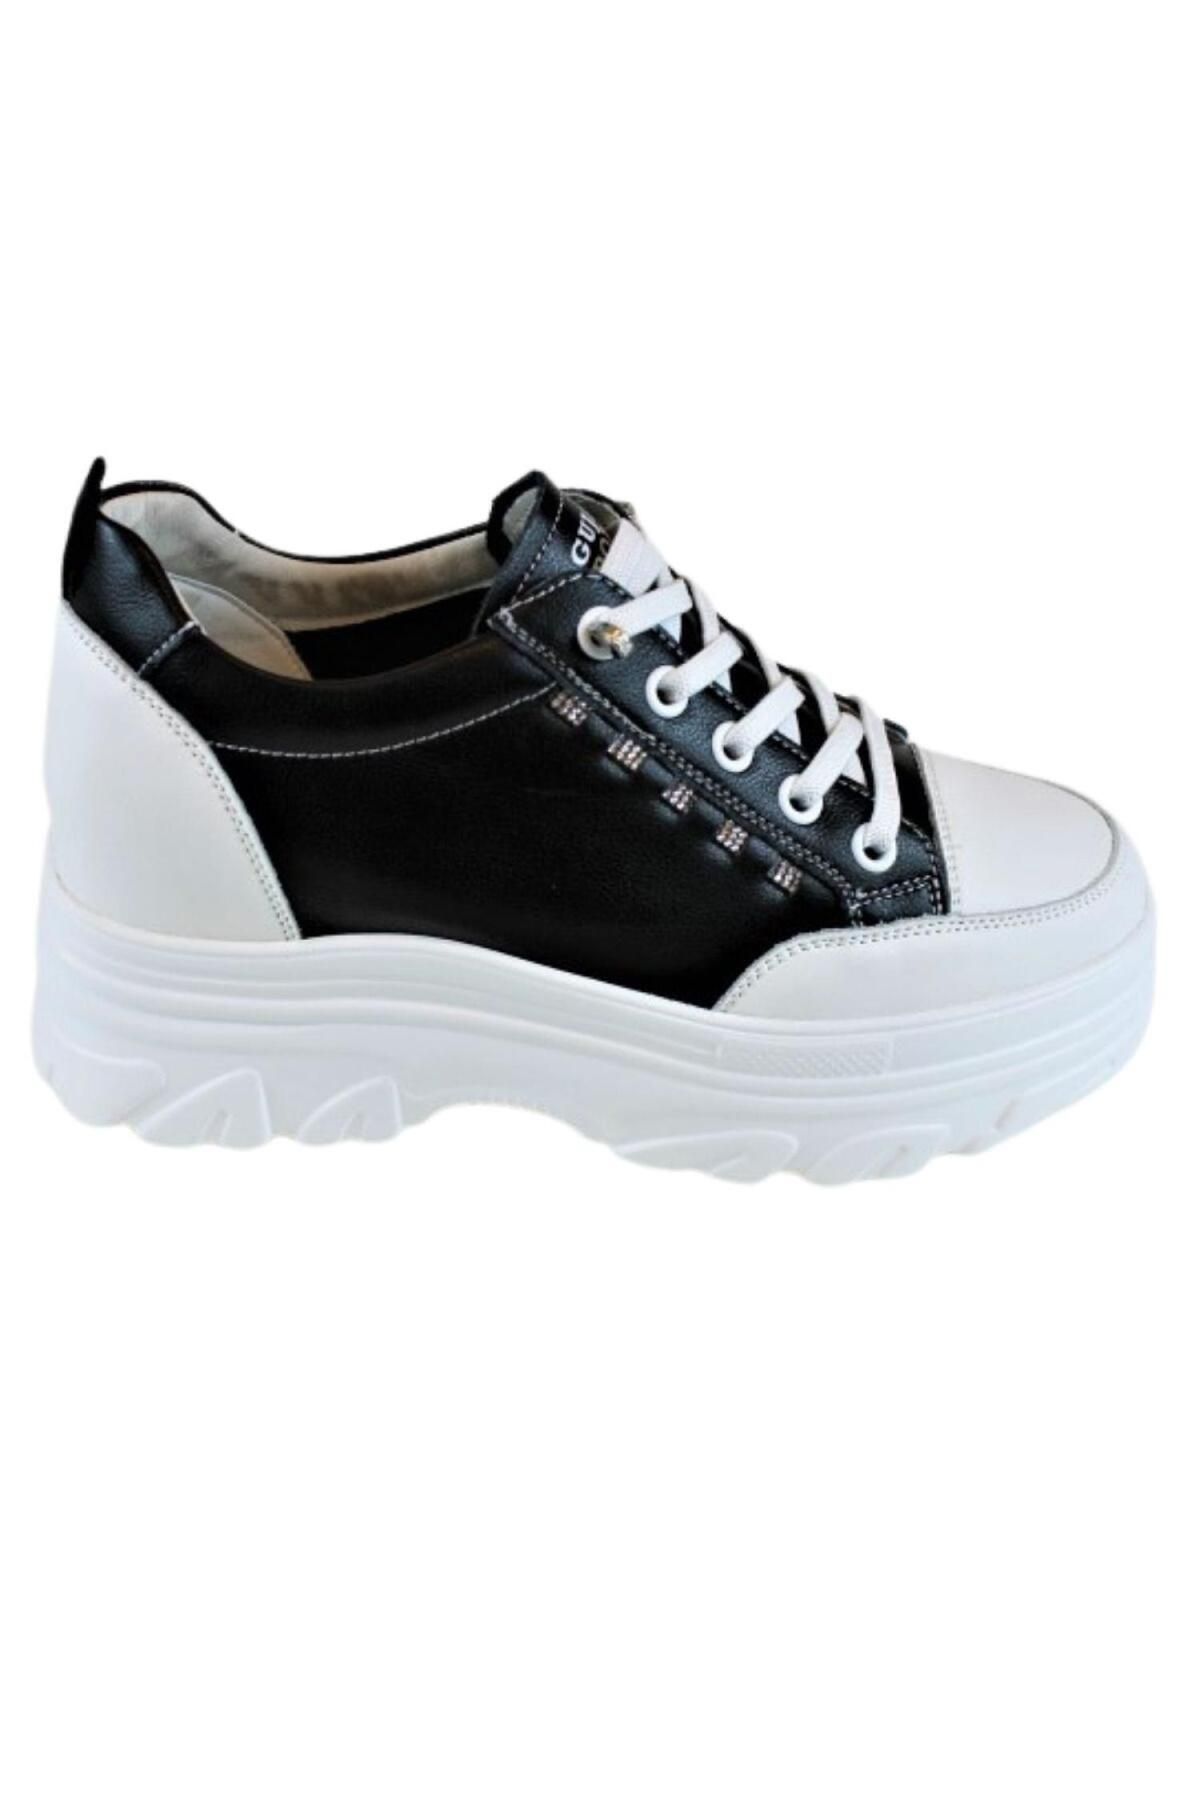 Guja 24y361 Kadın Sneaker Ayakkabı